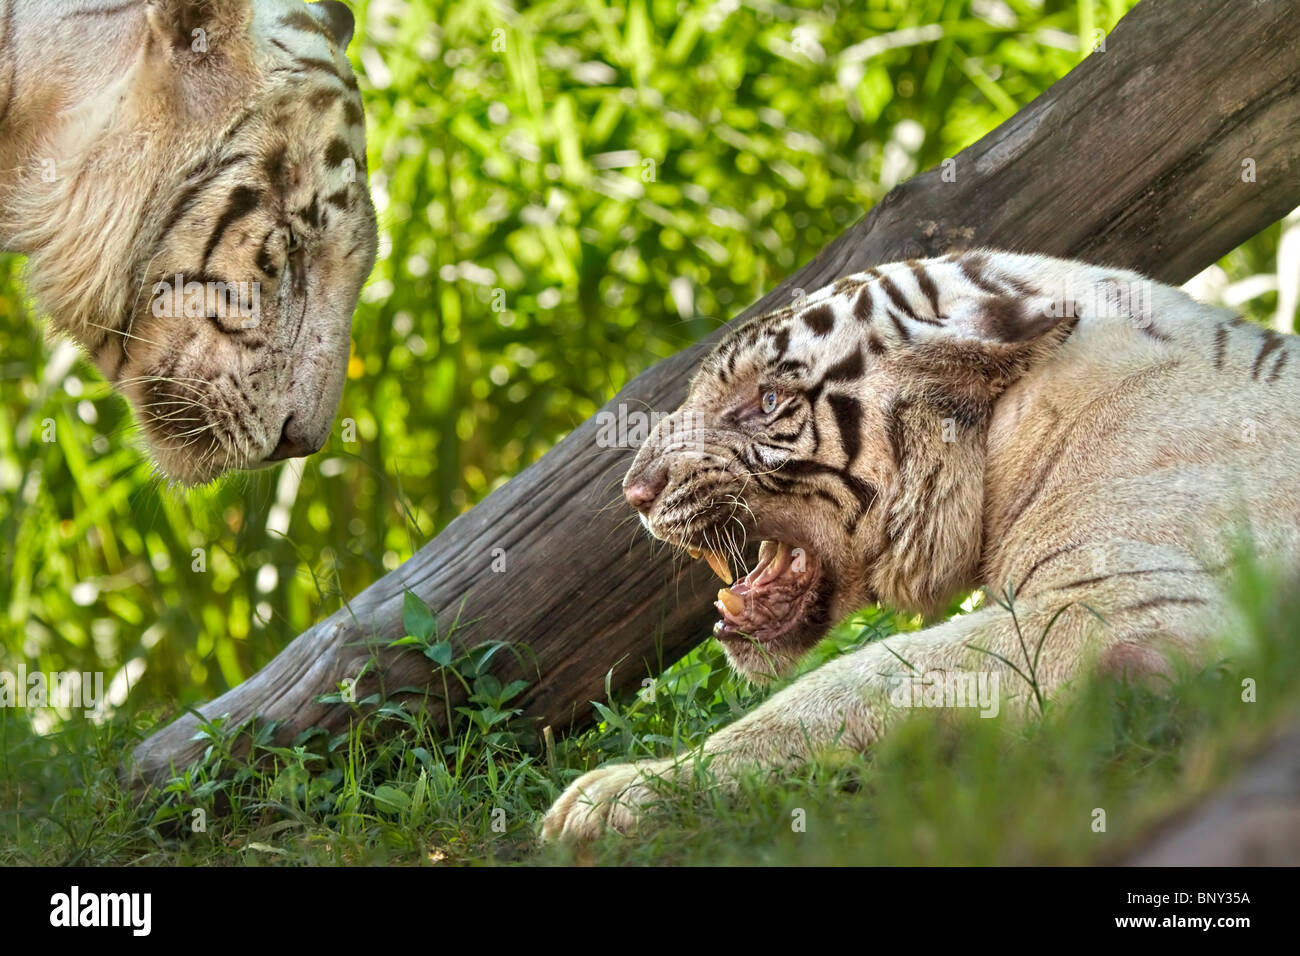 White tiger, panthera tigris, female growling at her mate. Stock Photo